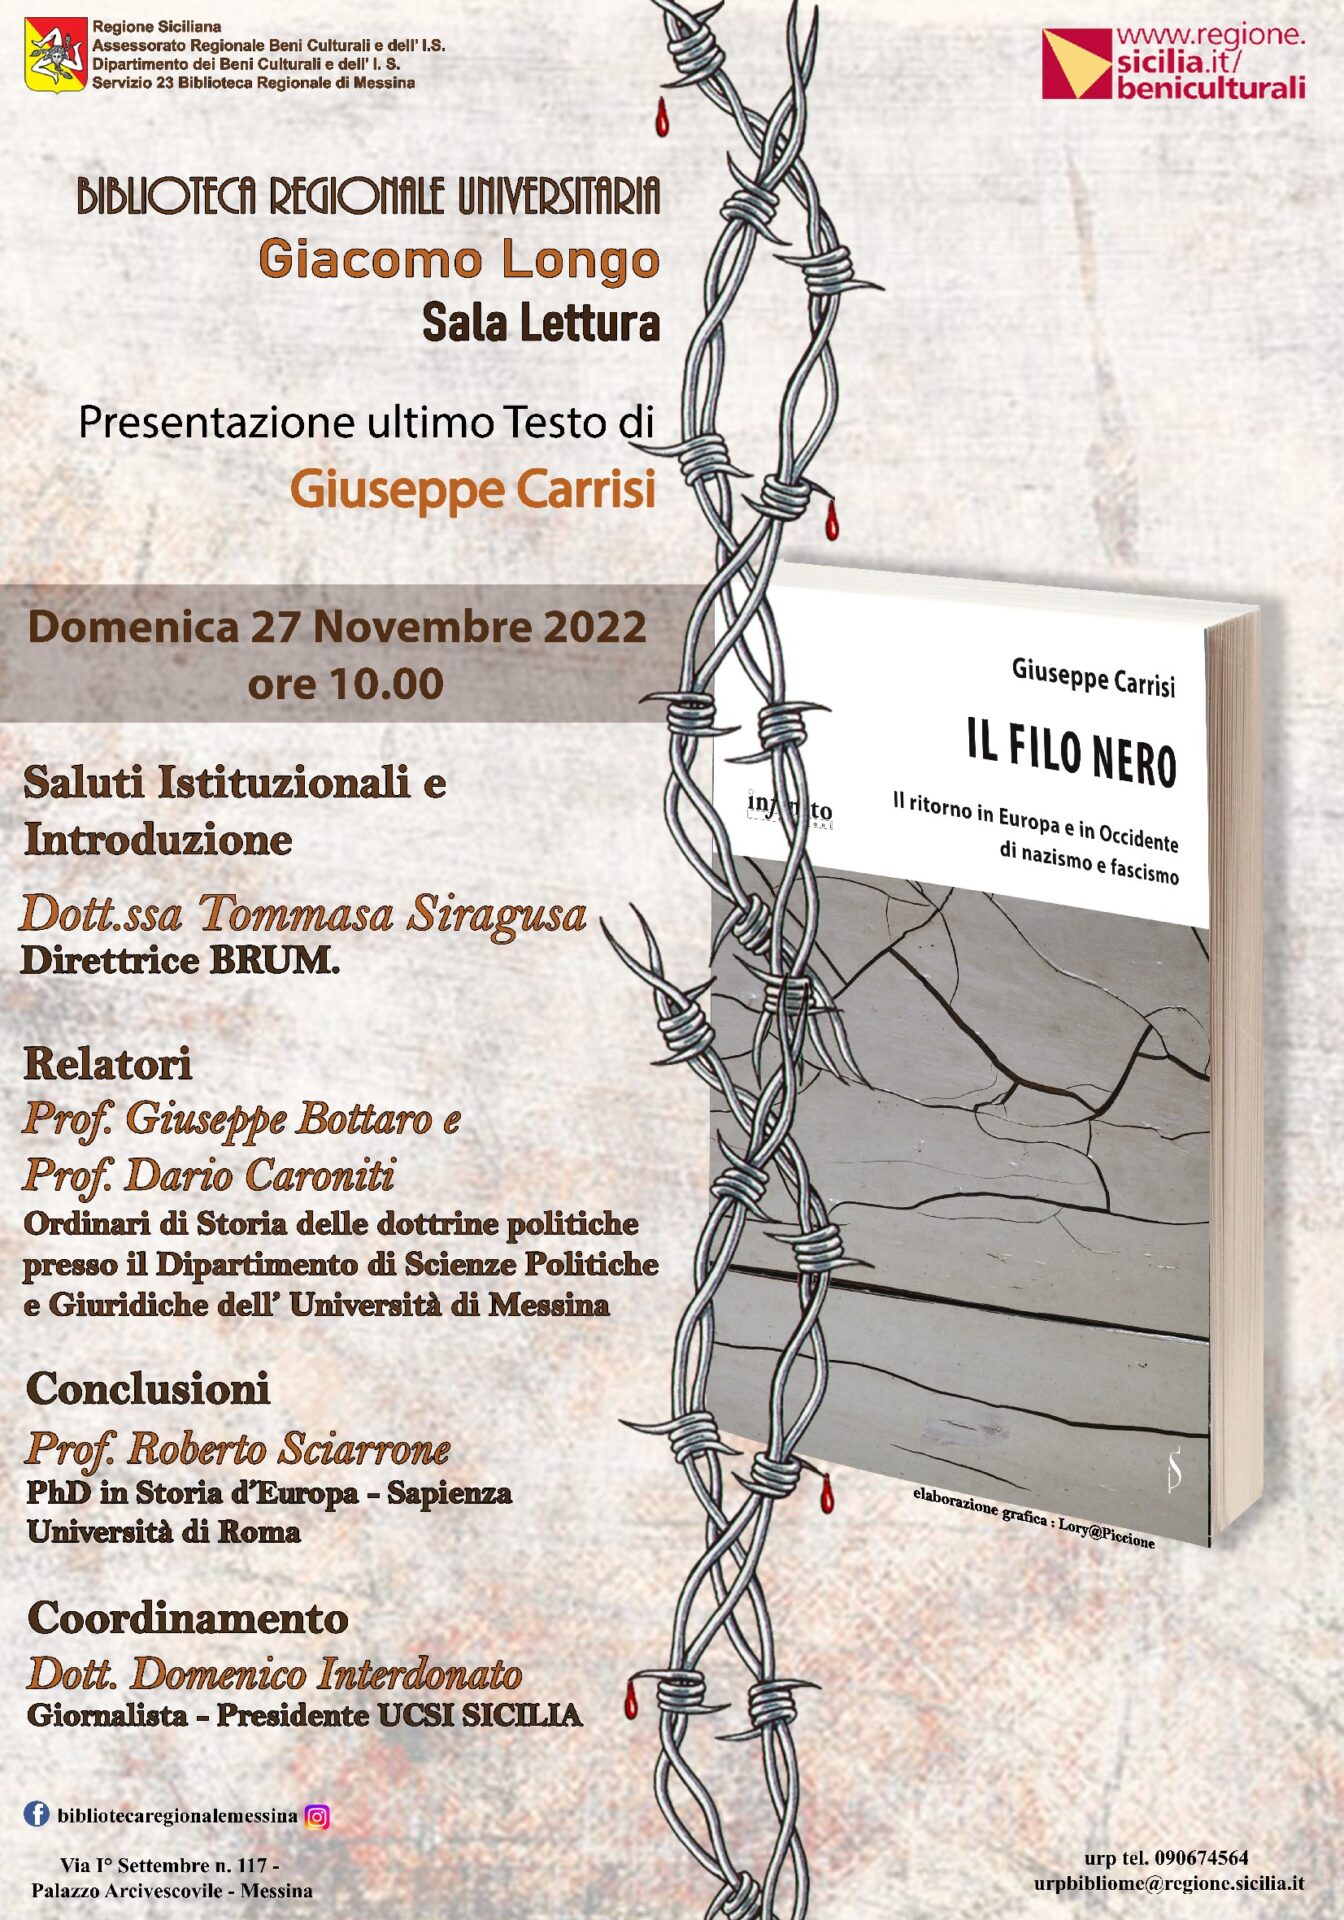 Presentazione del libro “IL FILO NERO – Il ritorno in Europa e in Occidente di nazismo e fascismo” di Giuseppe Carrisi